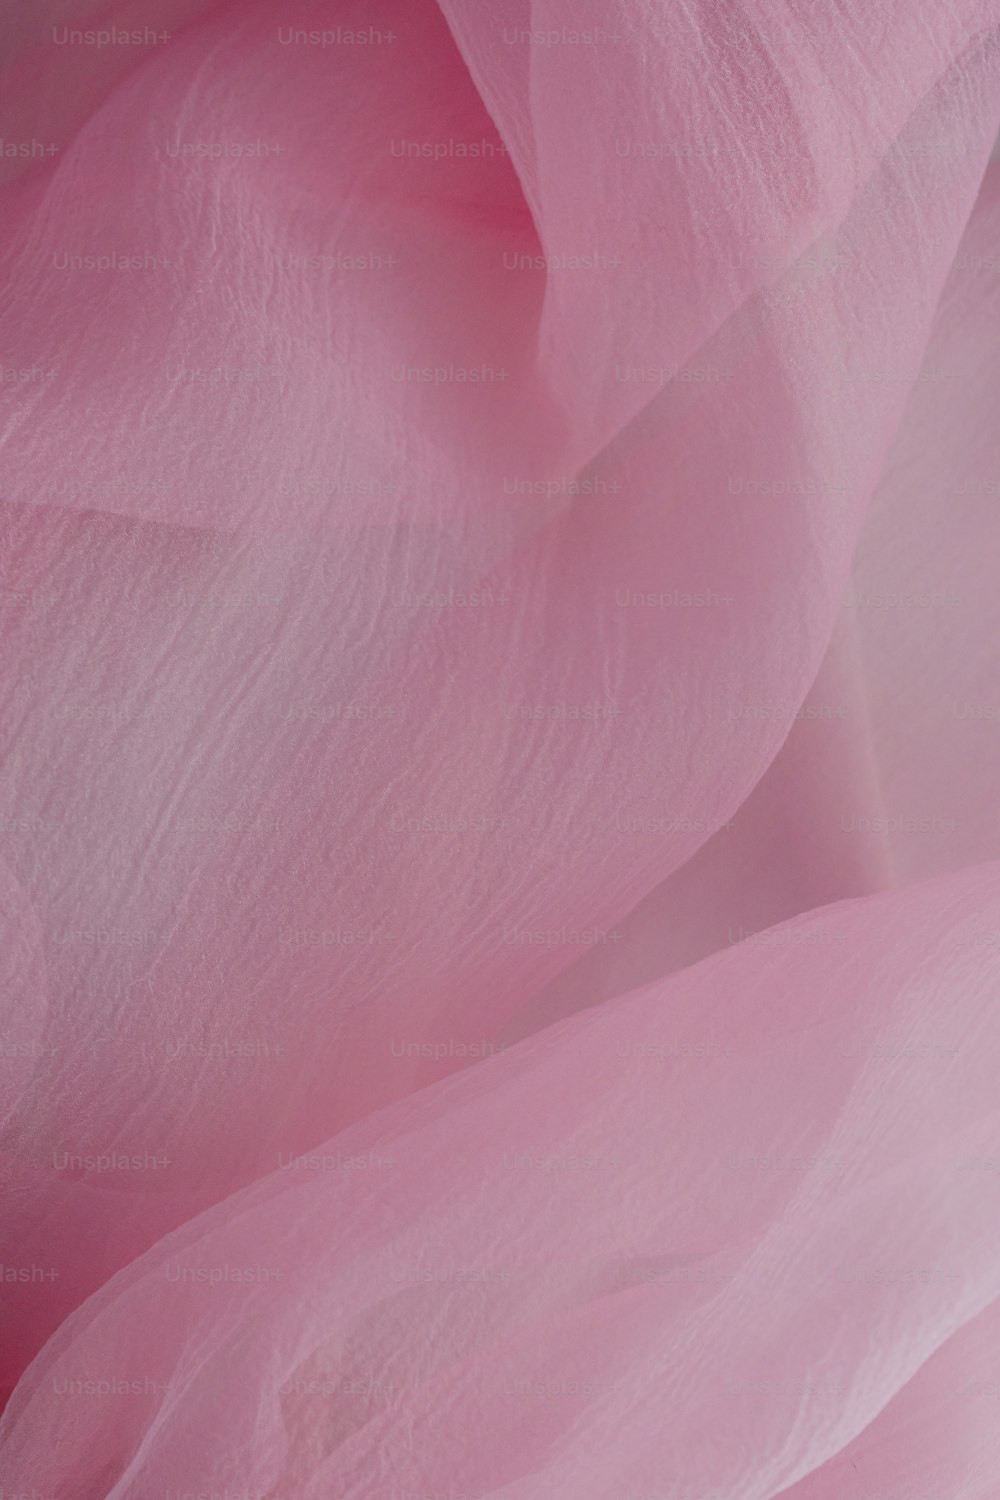 uma vista de perto de uma flor rosa